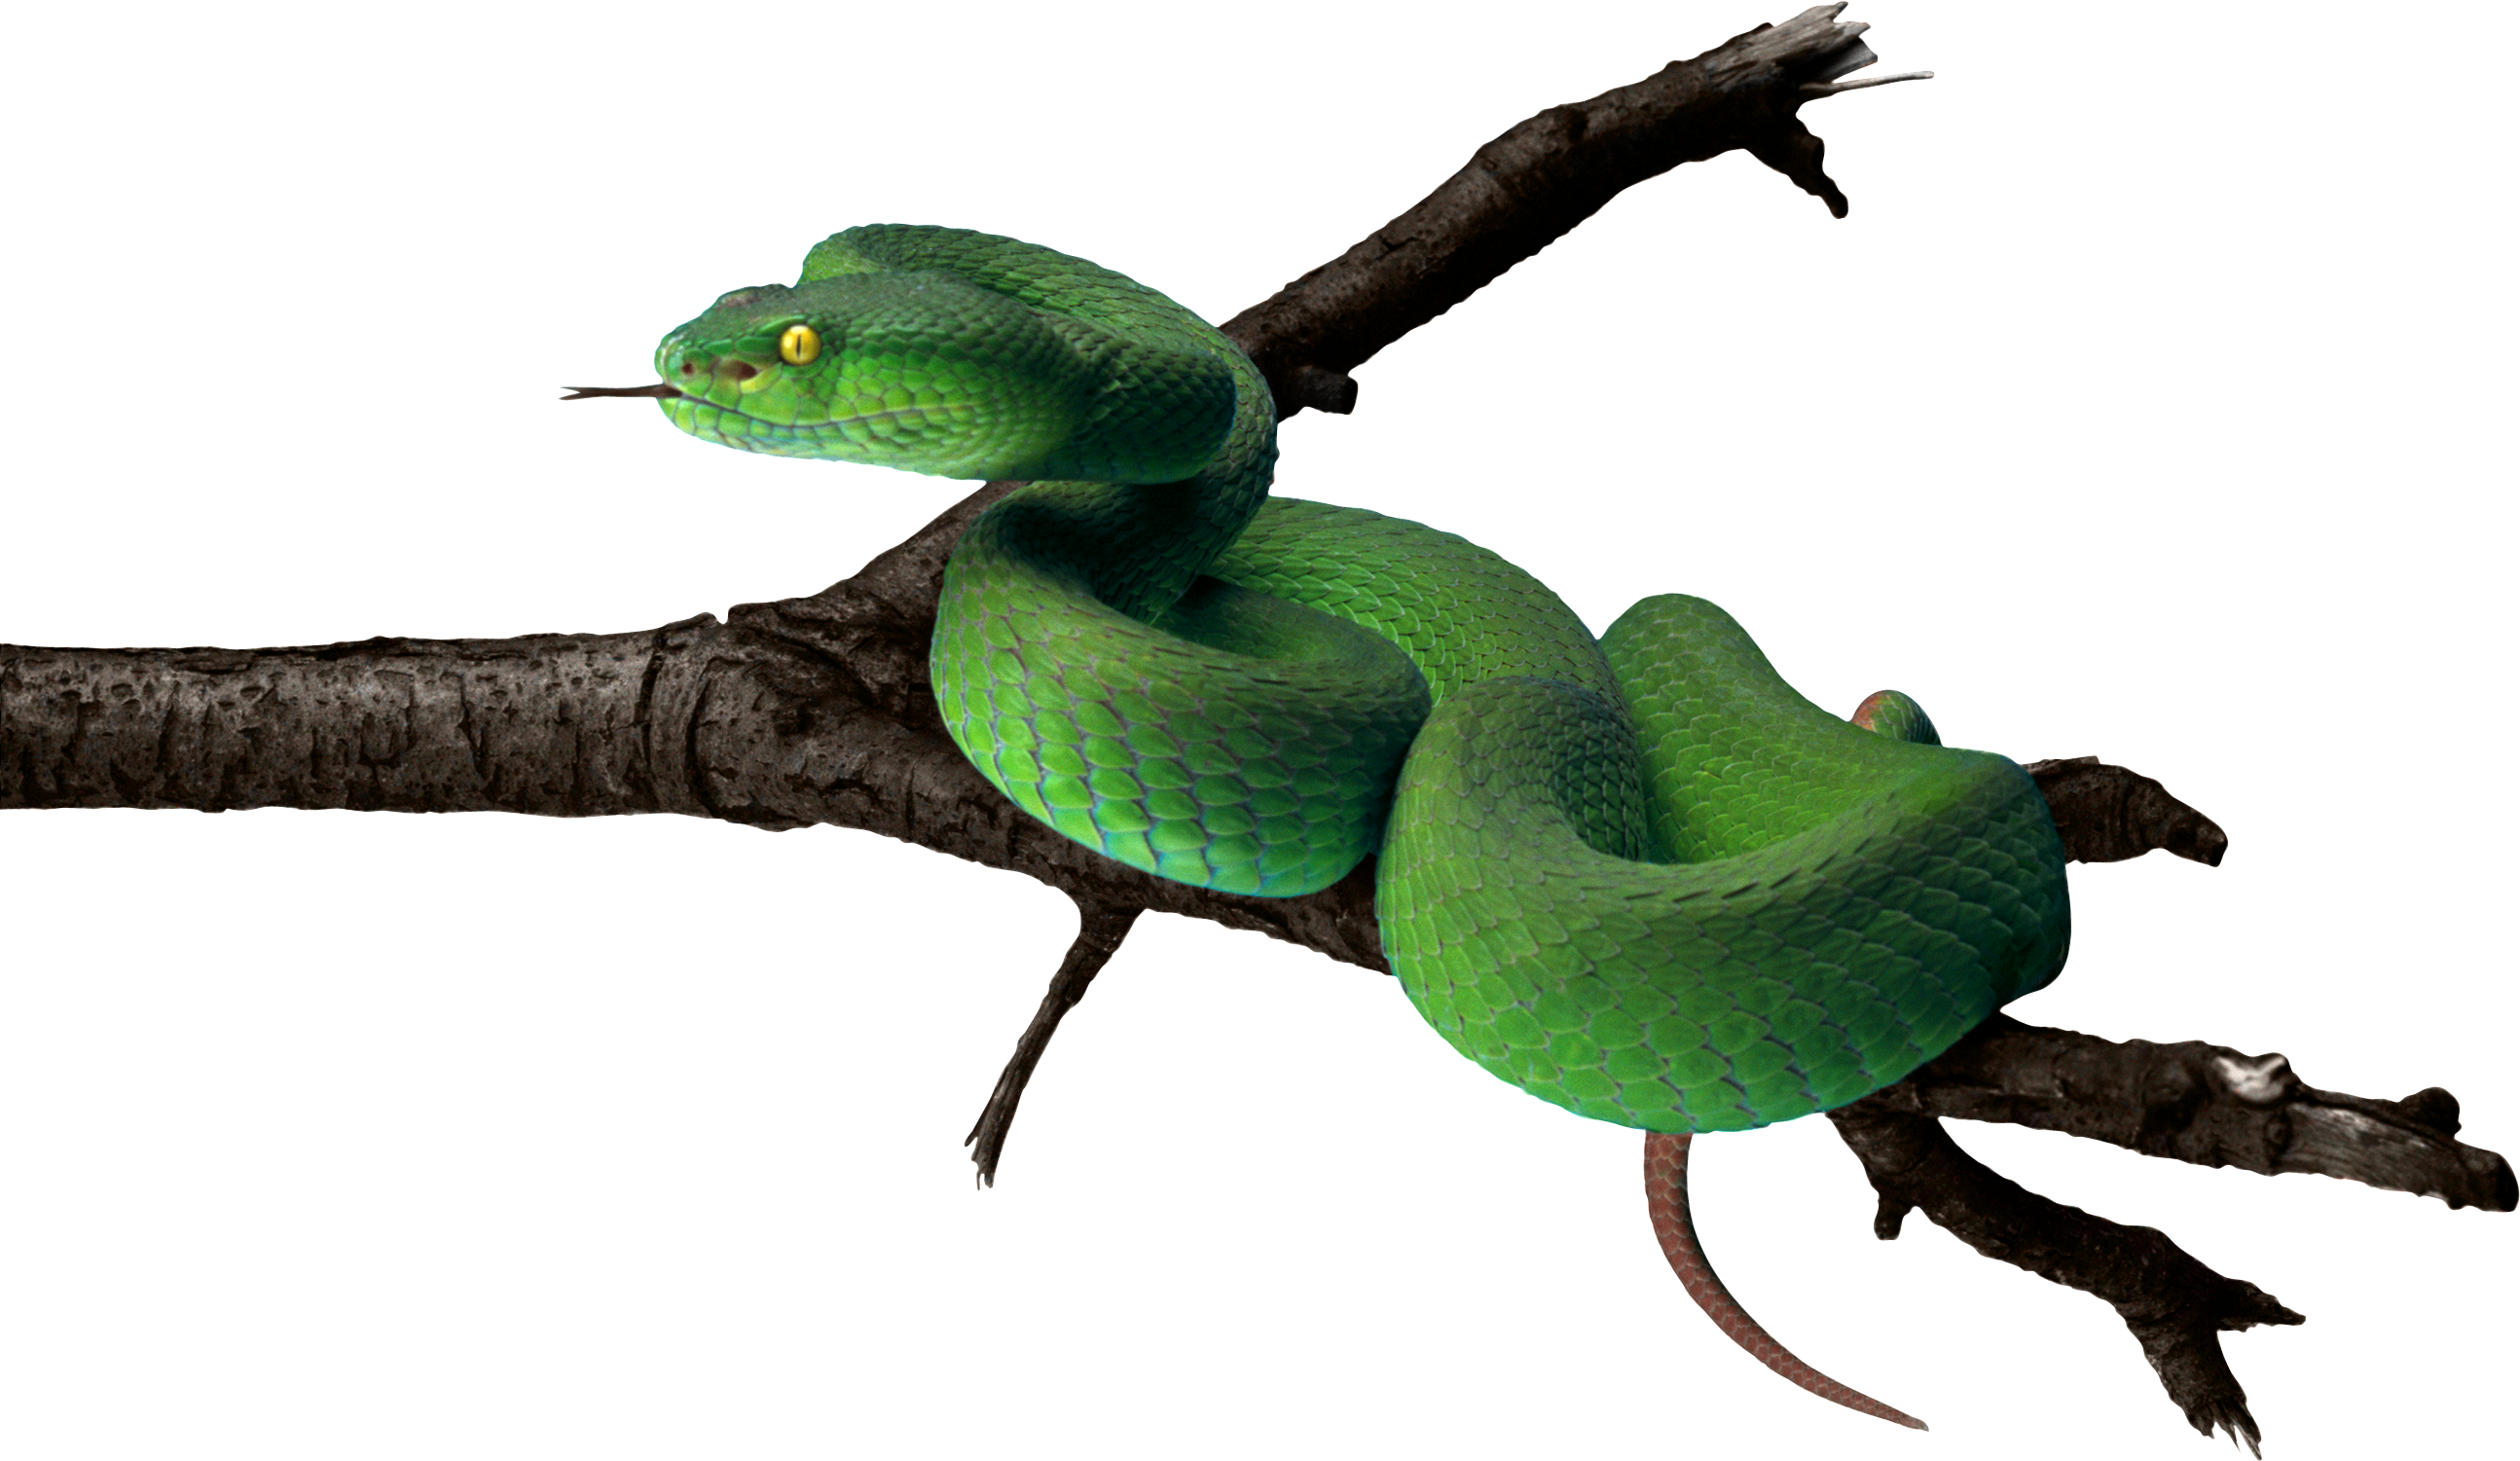 Зеленая змея PNG фото